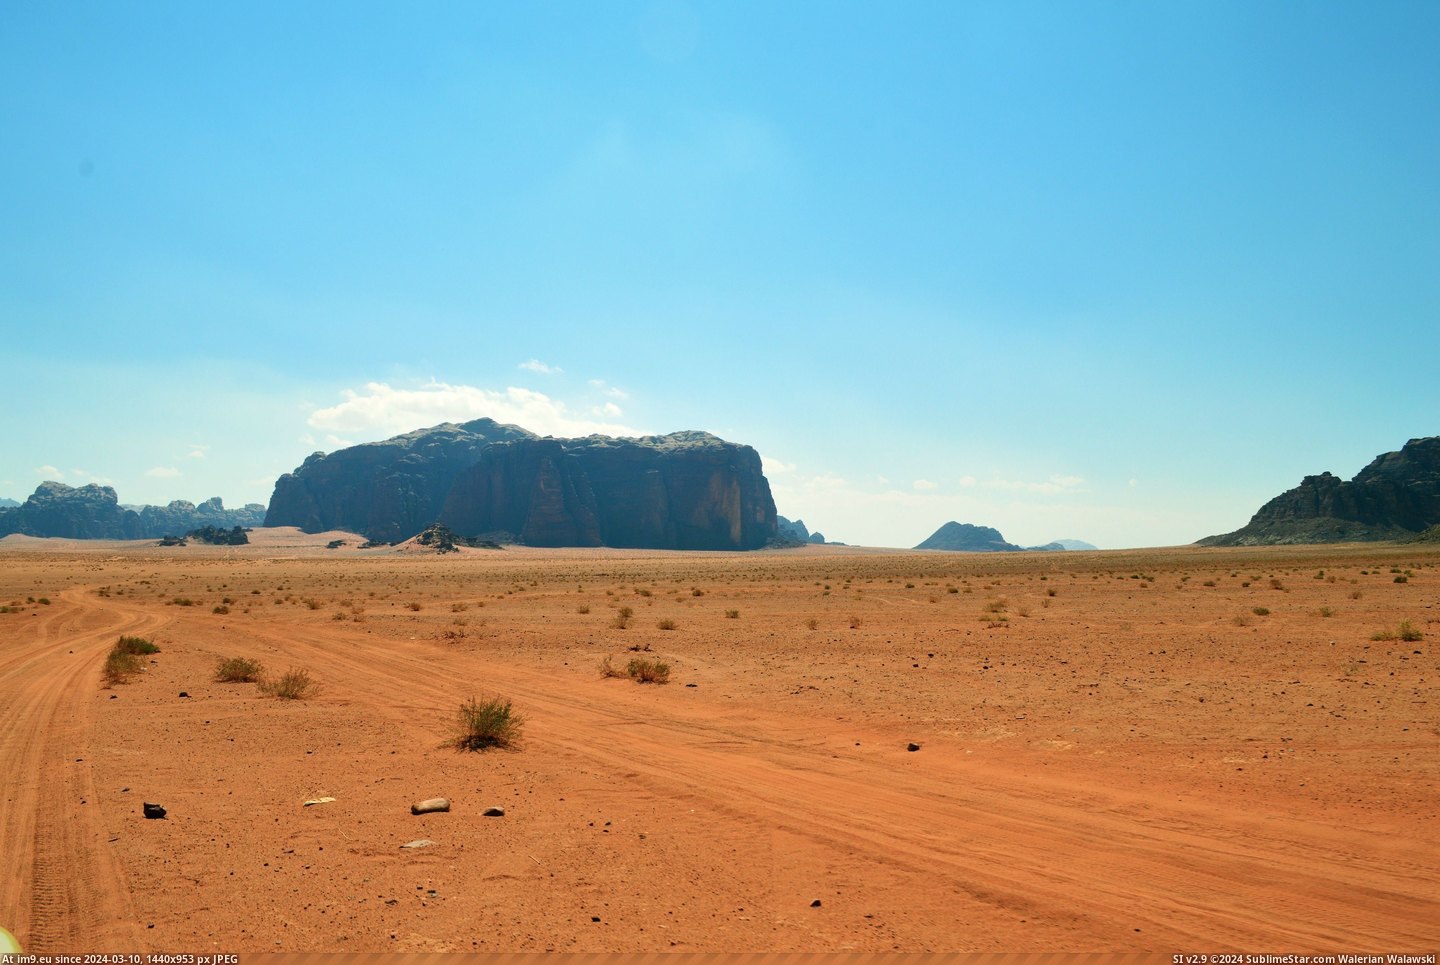 #Desert #Rum #Wadi #Jordan [Earthporn] The never ending desert of Wadi Rum, Jordan [OC] [6016 x 4000] Pic. (Image of album My r/EARTHPORN favs))